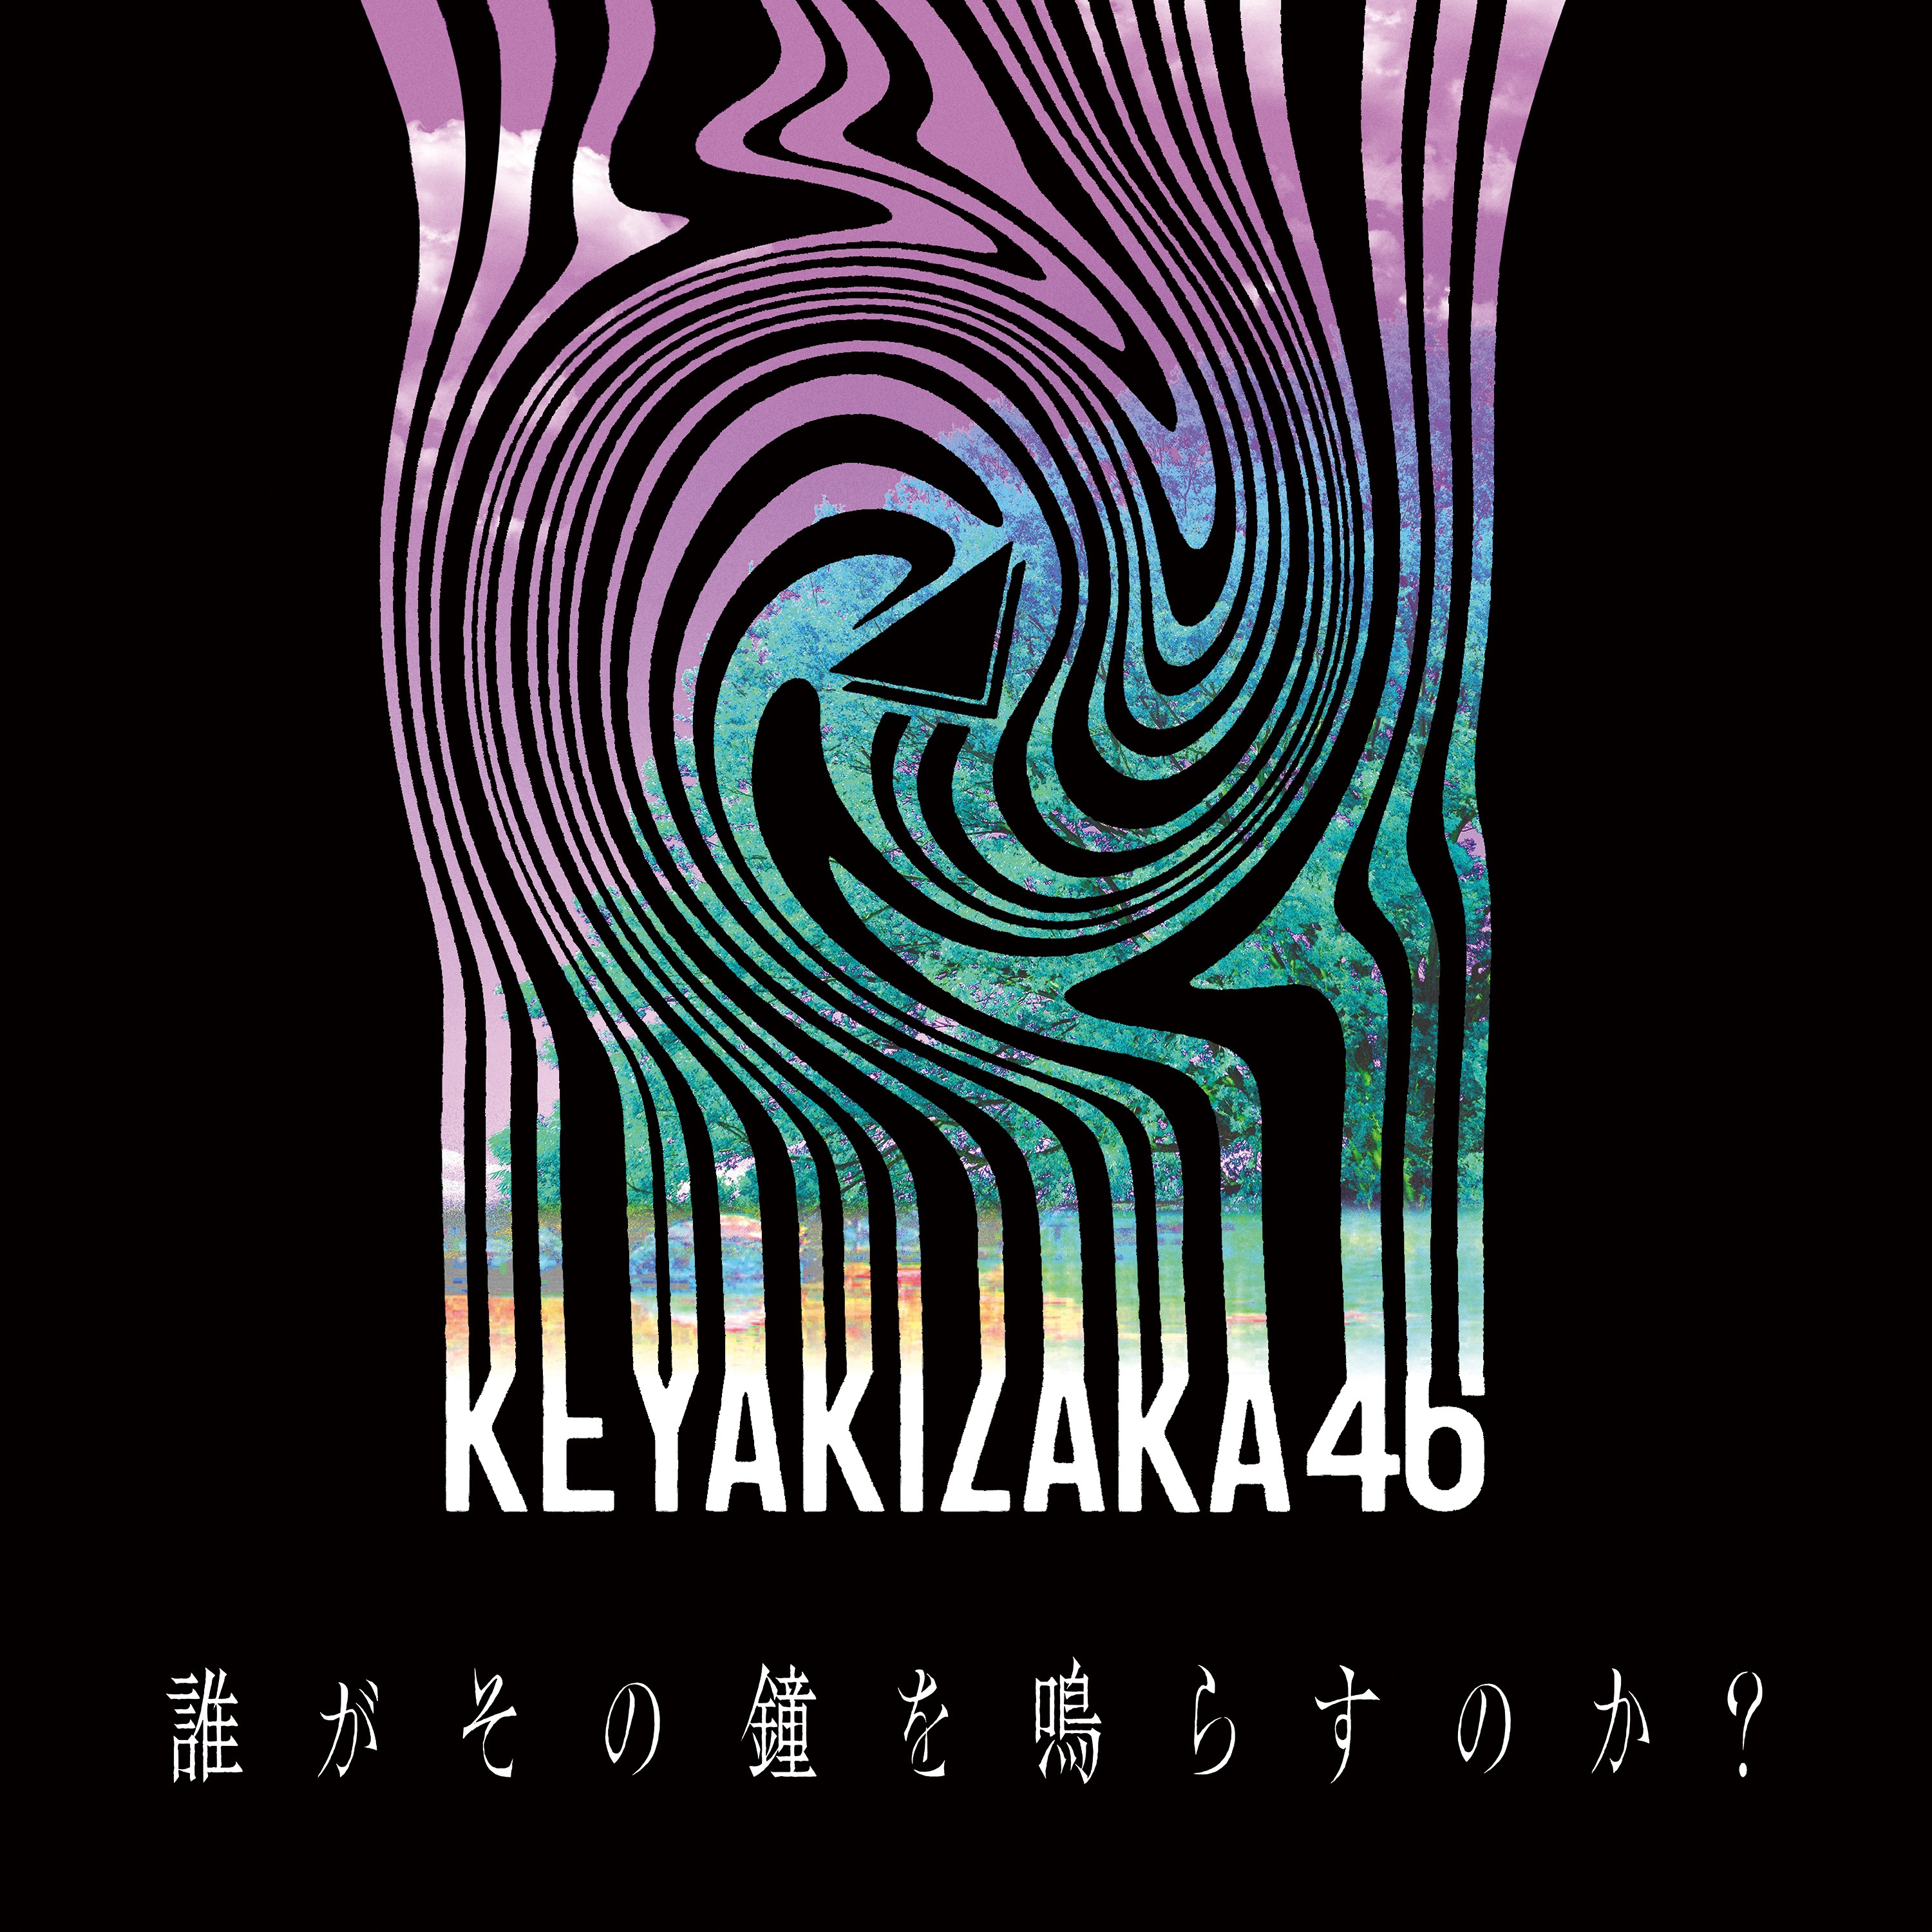 欅坂46 (けやきざか フォーティーシックス) 配信限定シングル『誰がその鐘を鳴らすのか?』(2020年8月21日発売) 高画質ジャケット画像 (ジャケ写)